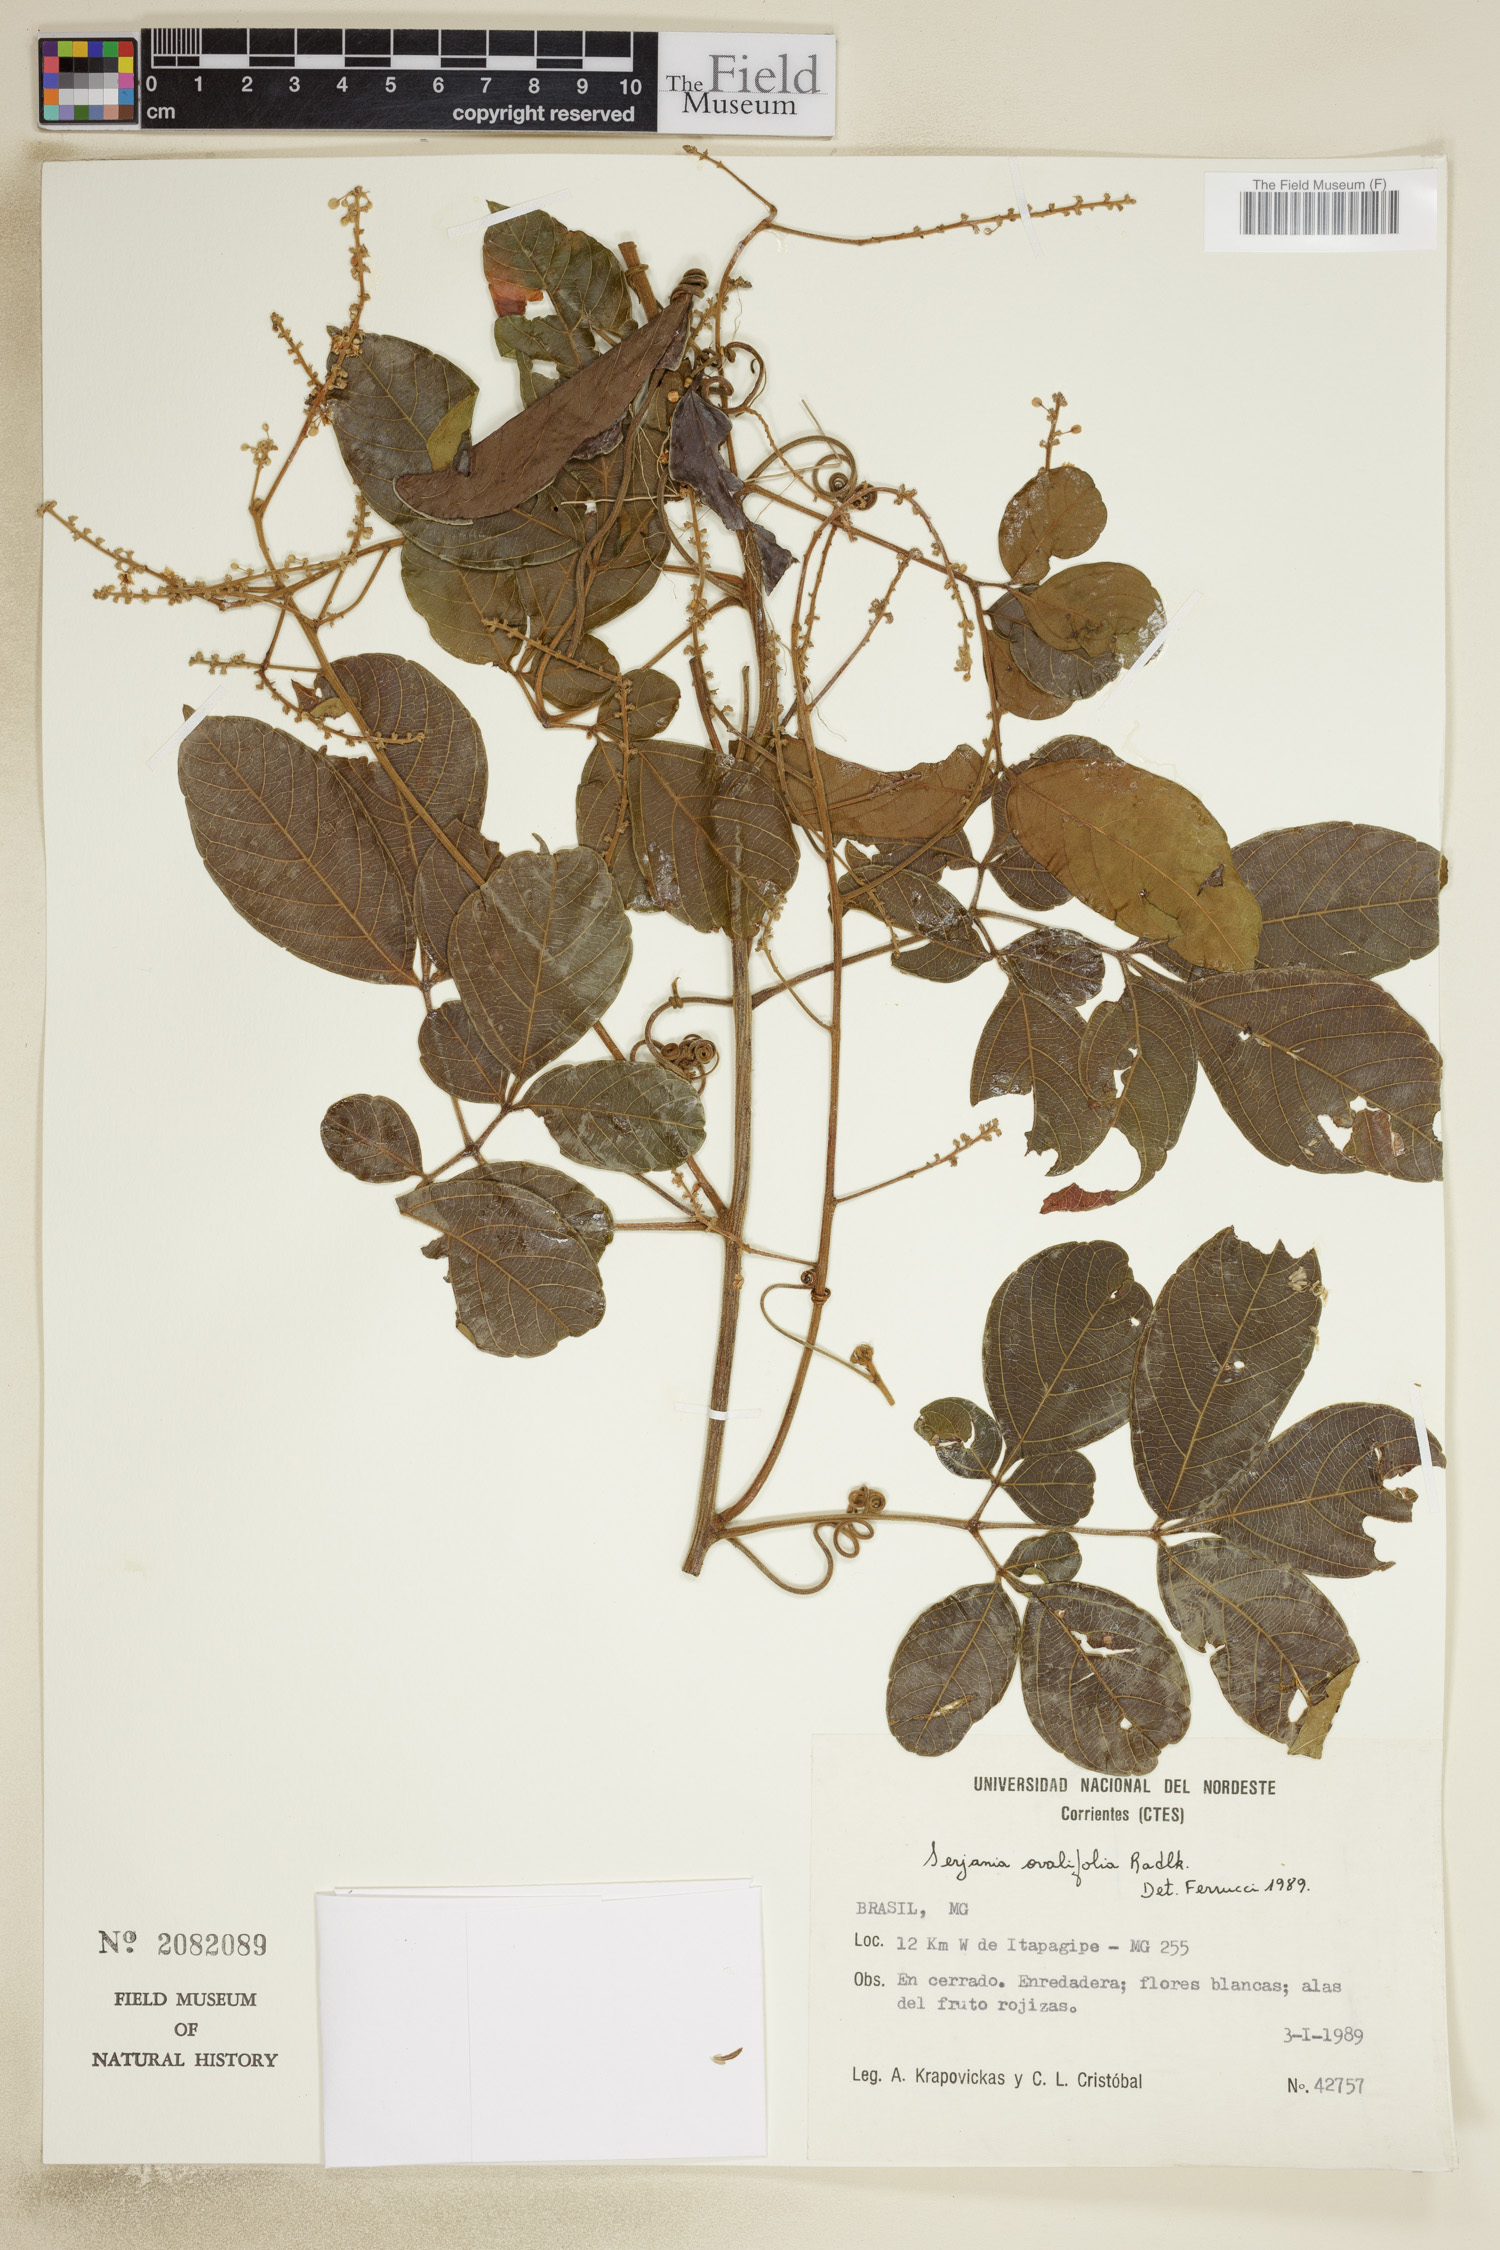 Serjania ovalifolia image